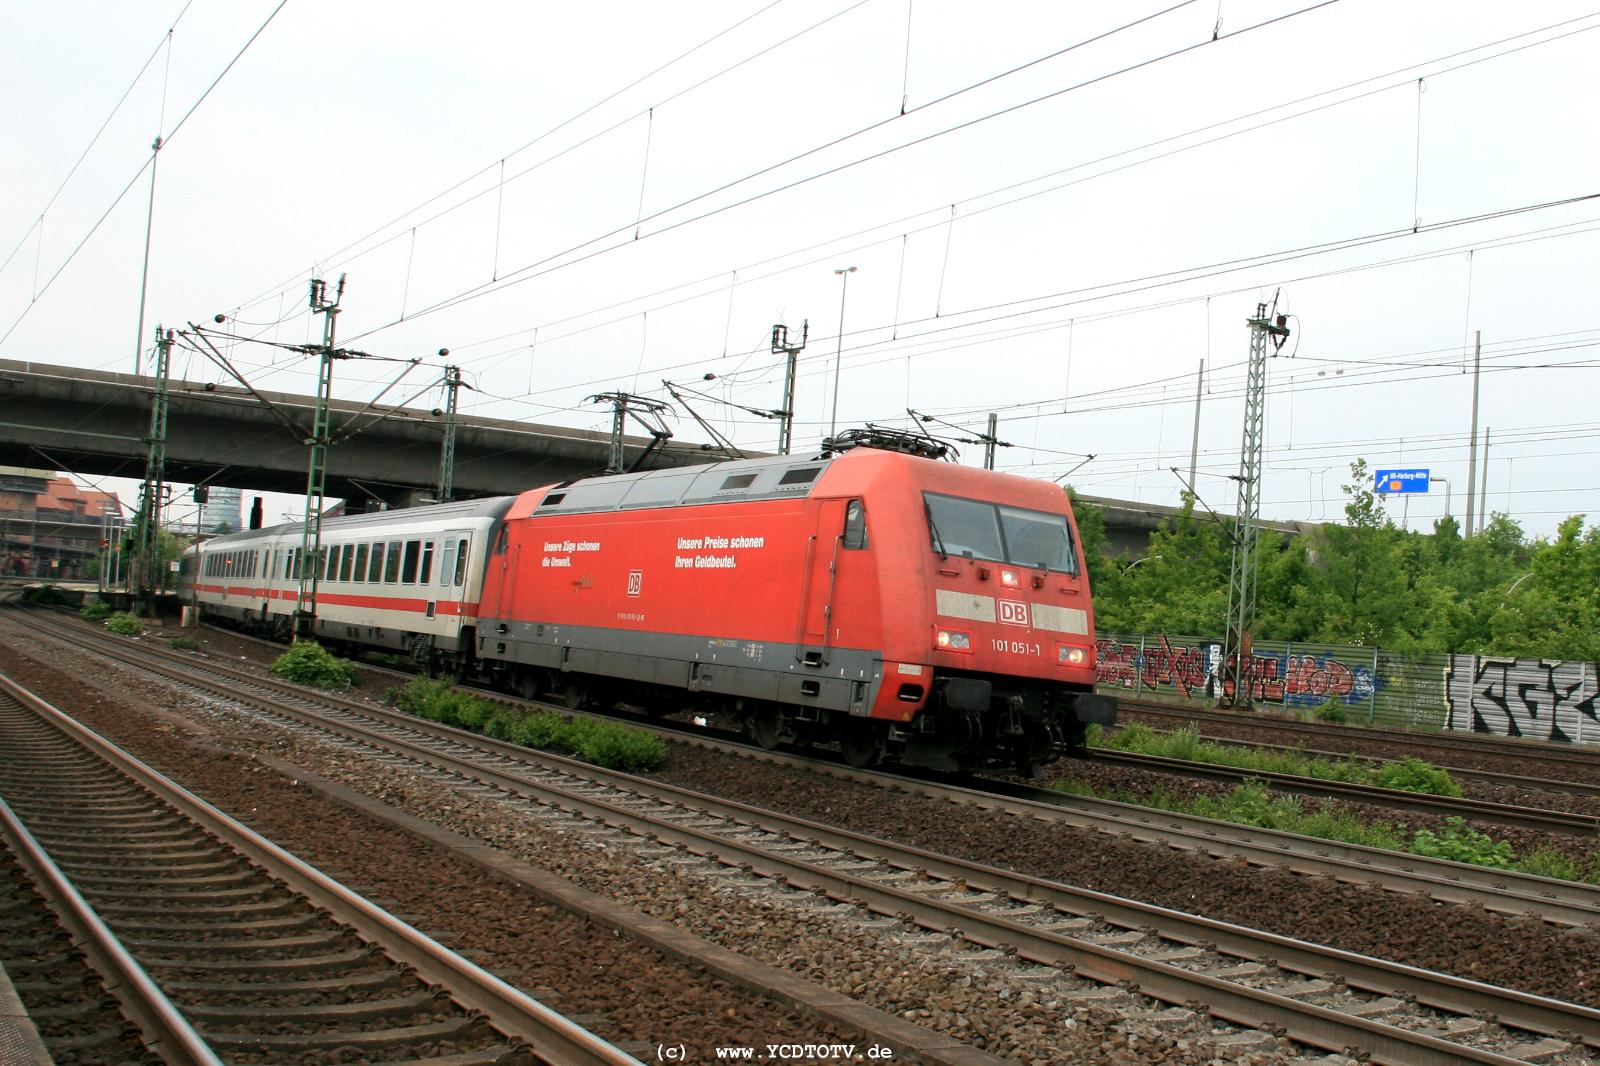  Bahnhof Hamburg-Harburg, 18.05.2011, 15:01 101 051-1 Richtung Sden 